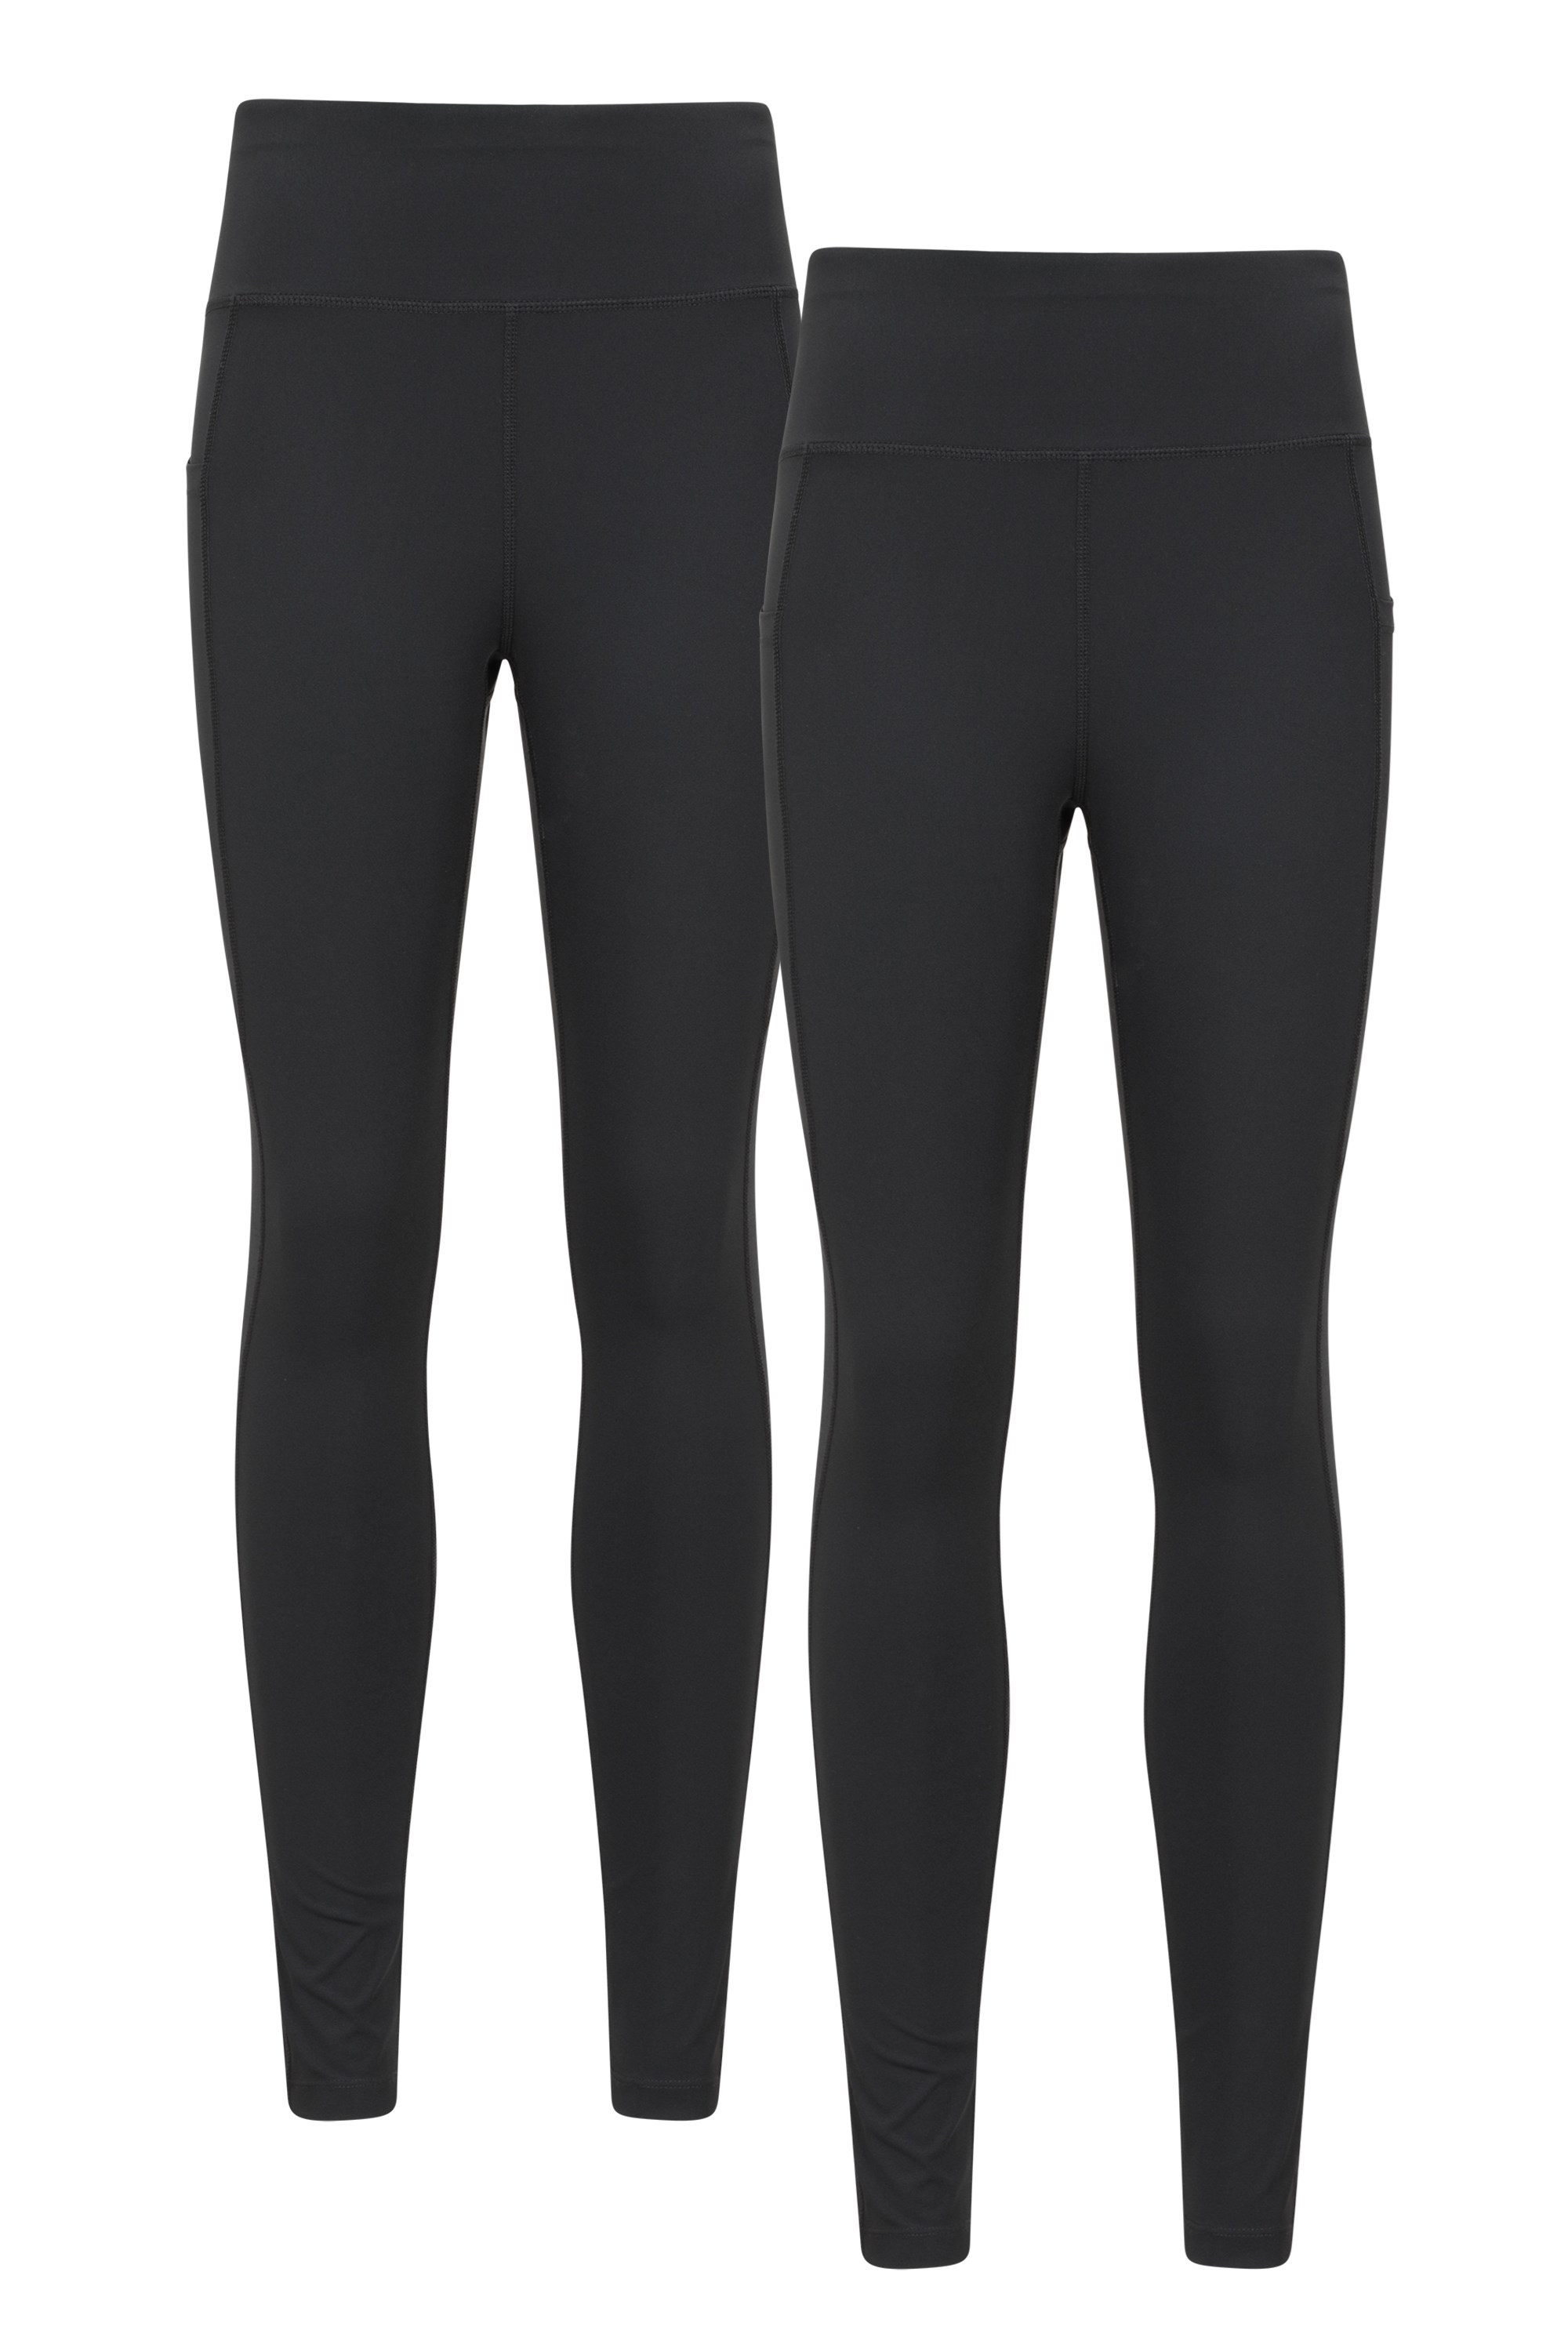 Blackout legginsy damskie z wysokim stanem — opakowanie zbiorcze - Black